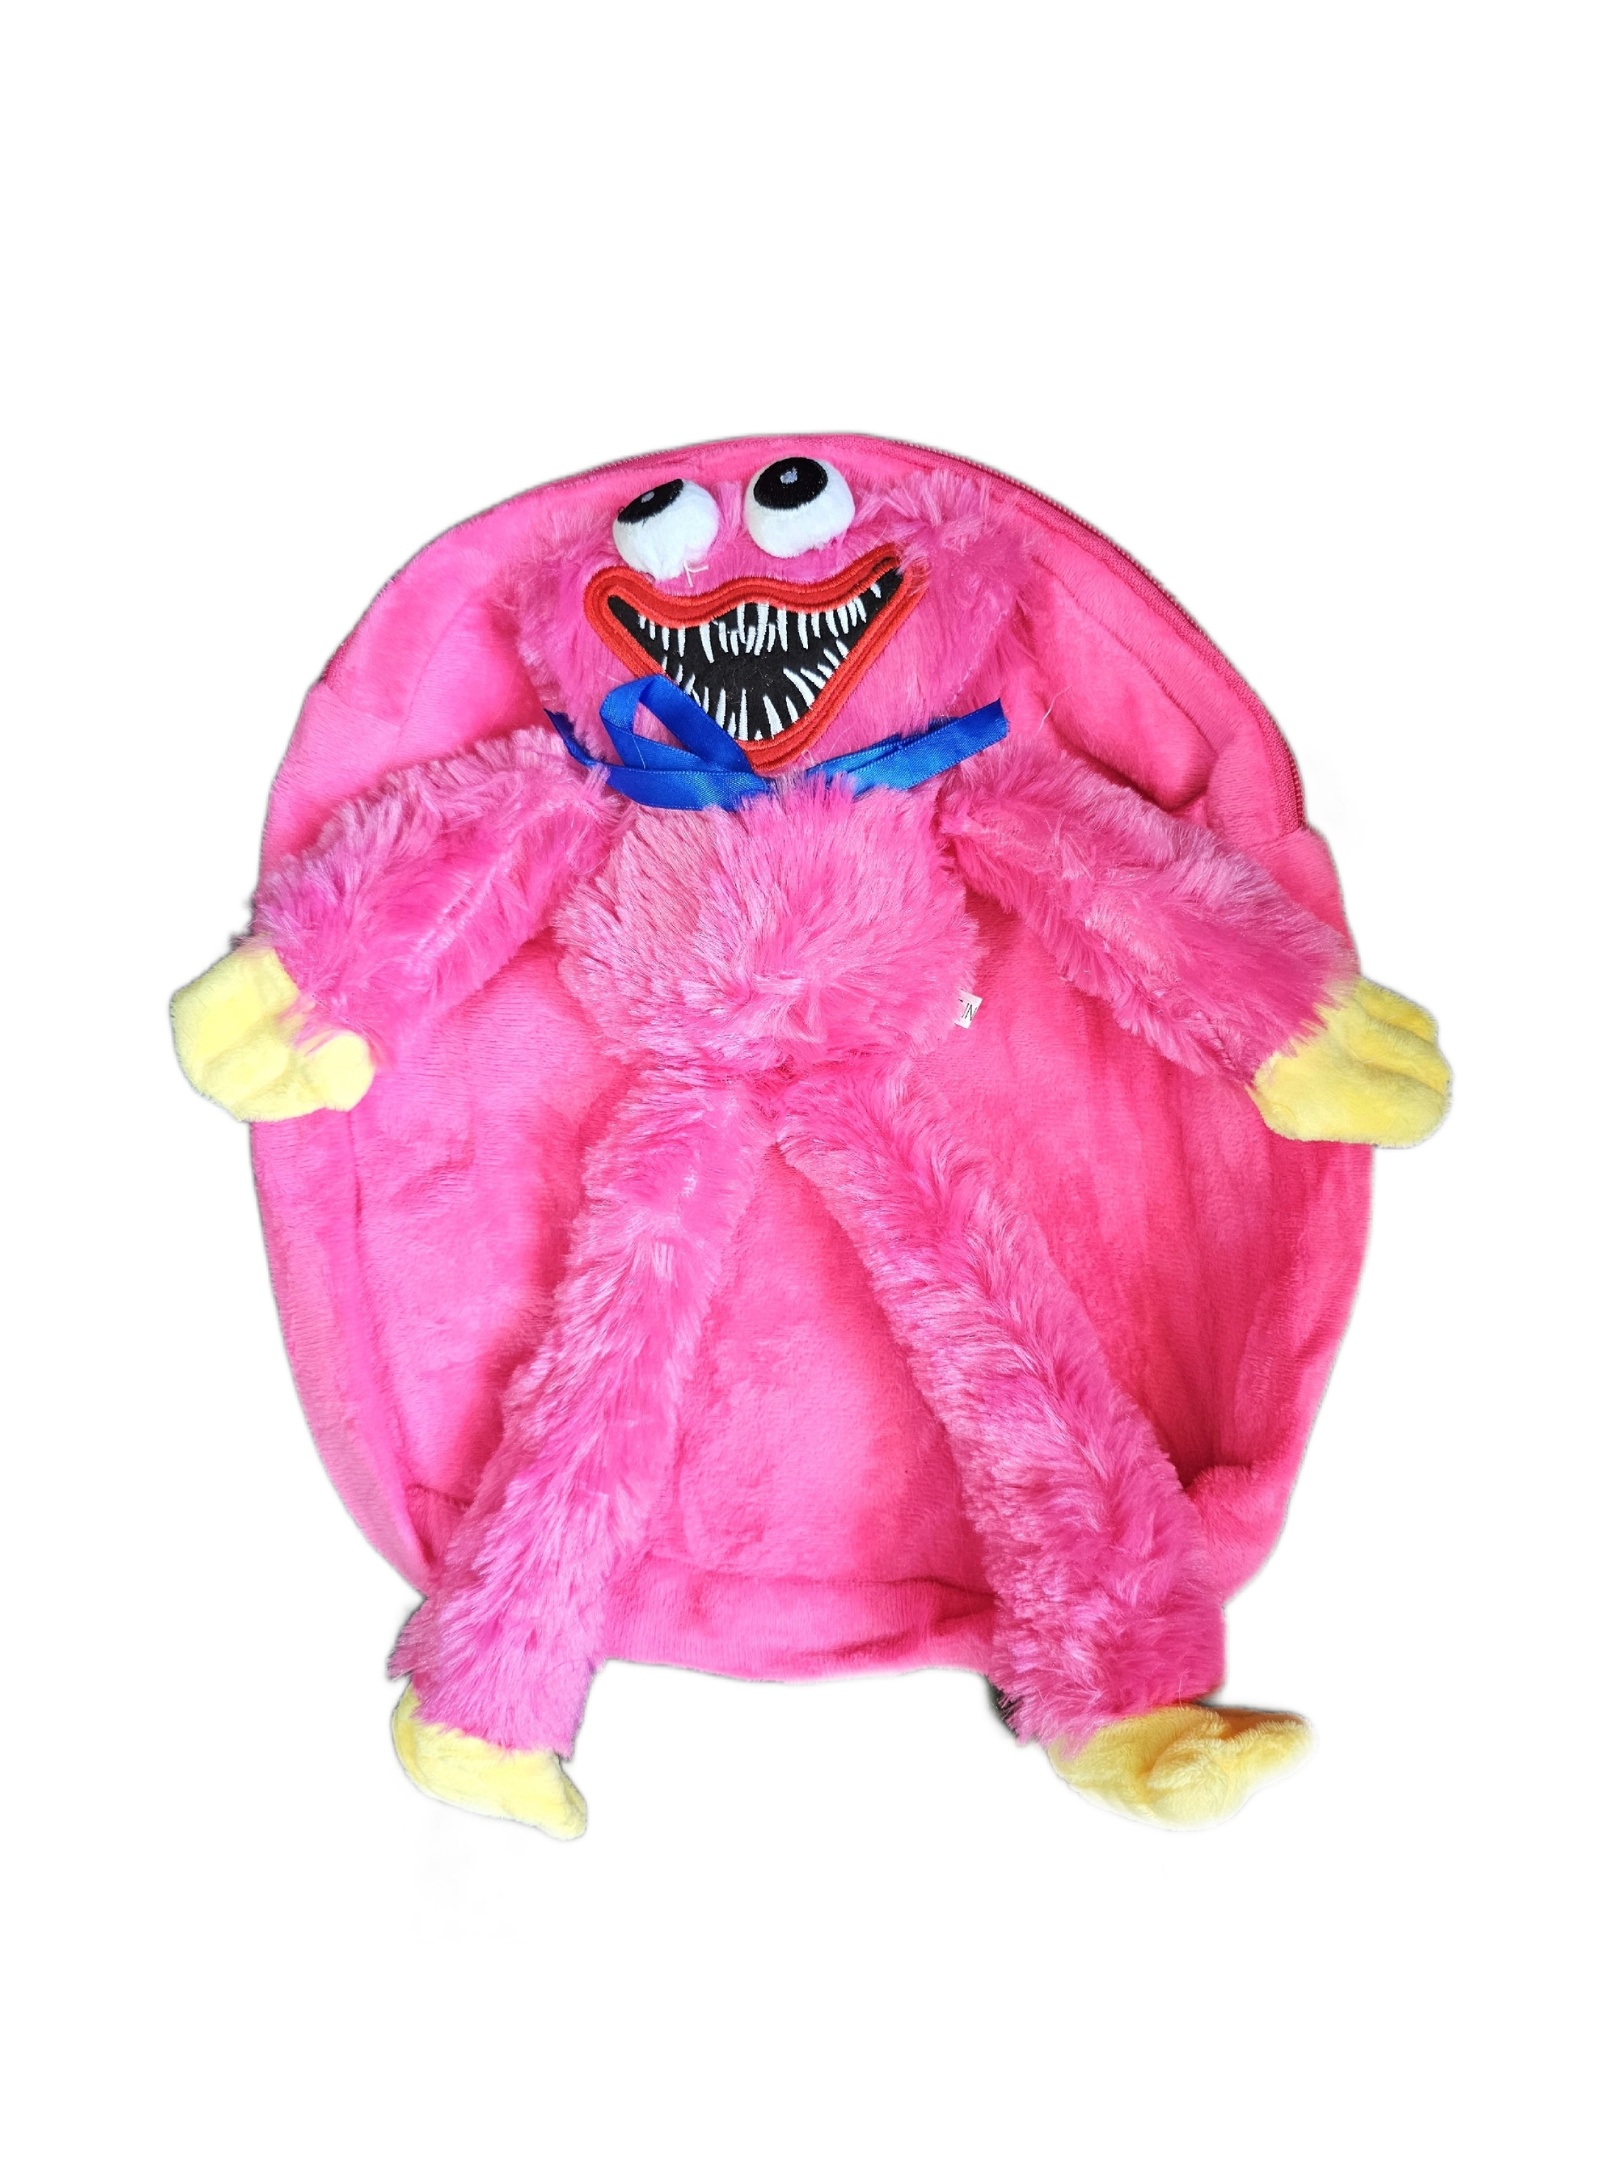 Рюкзак детский плюшевый с игрушкой Кисси Мисси Хаги Ваги, цвет розовый пушистый рюкзак panawealth хагги вагги кисси мисси килли вилли